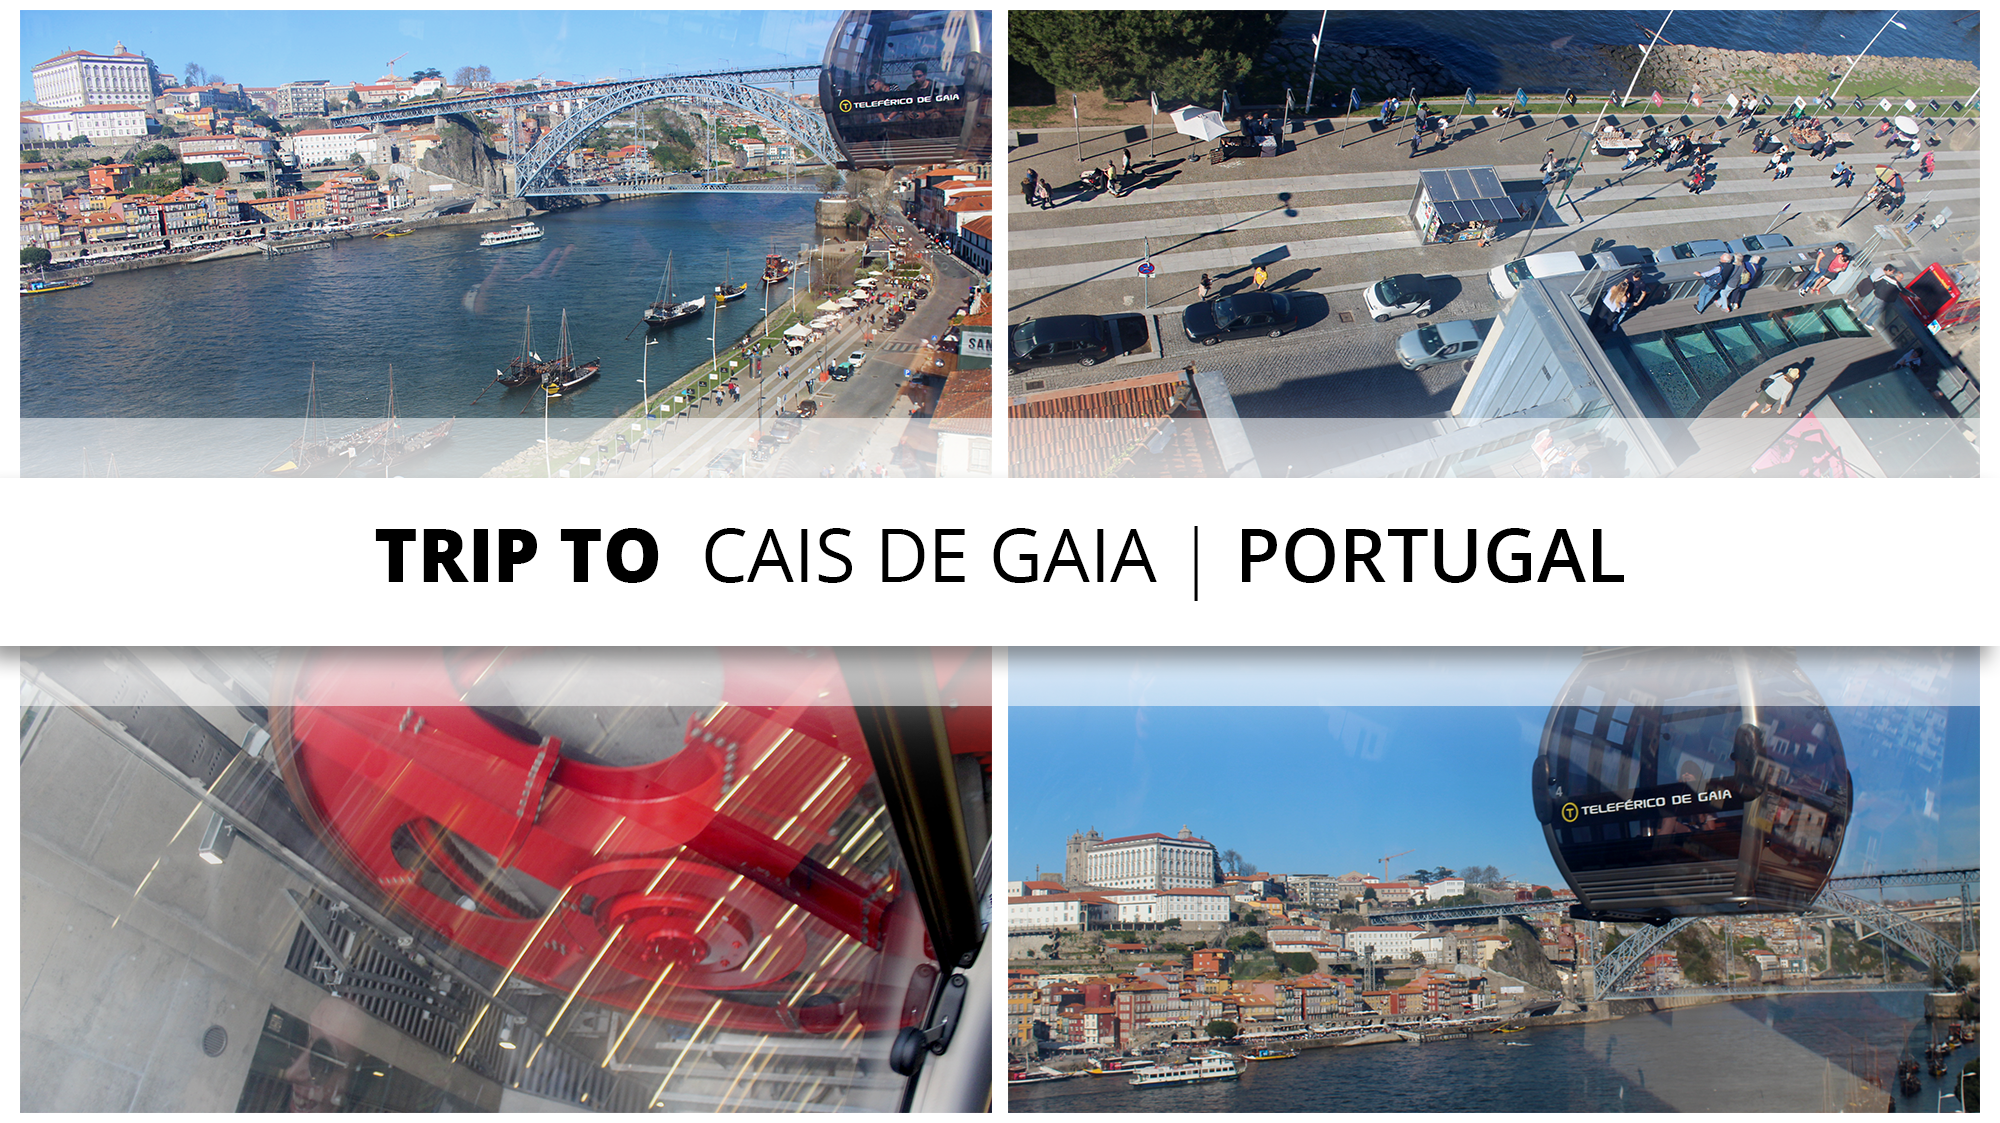 Trip to Cais de Gaia - V.N.Gaia | Portugal